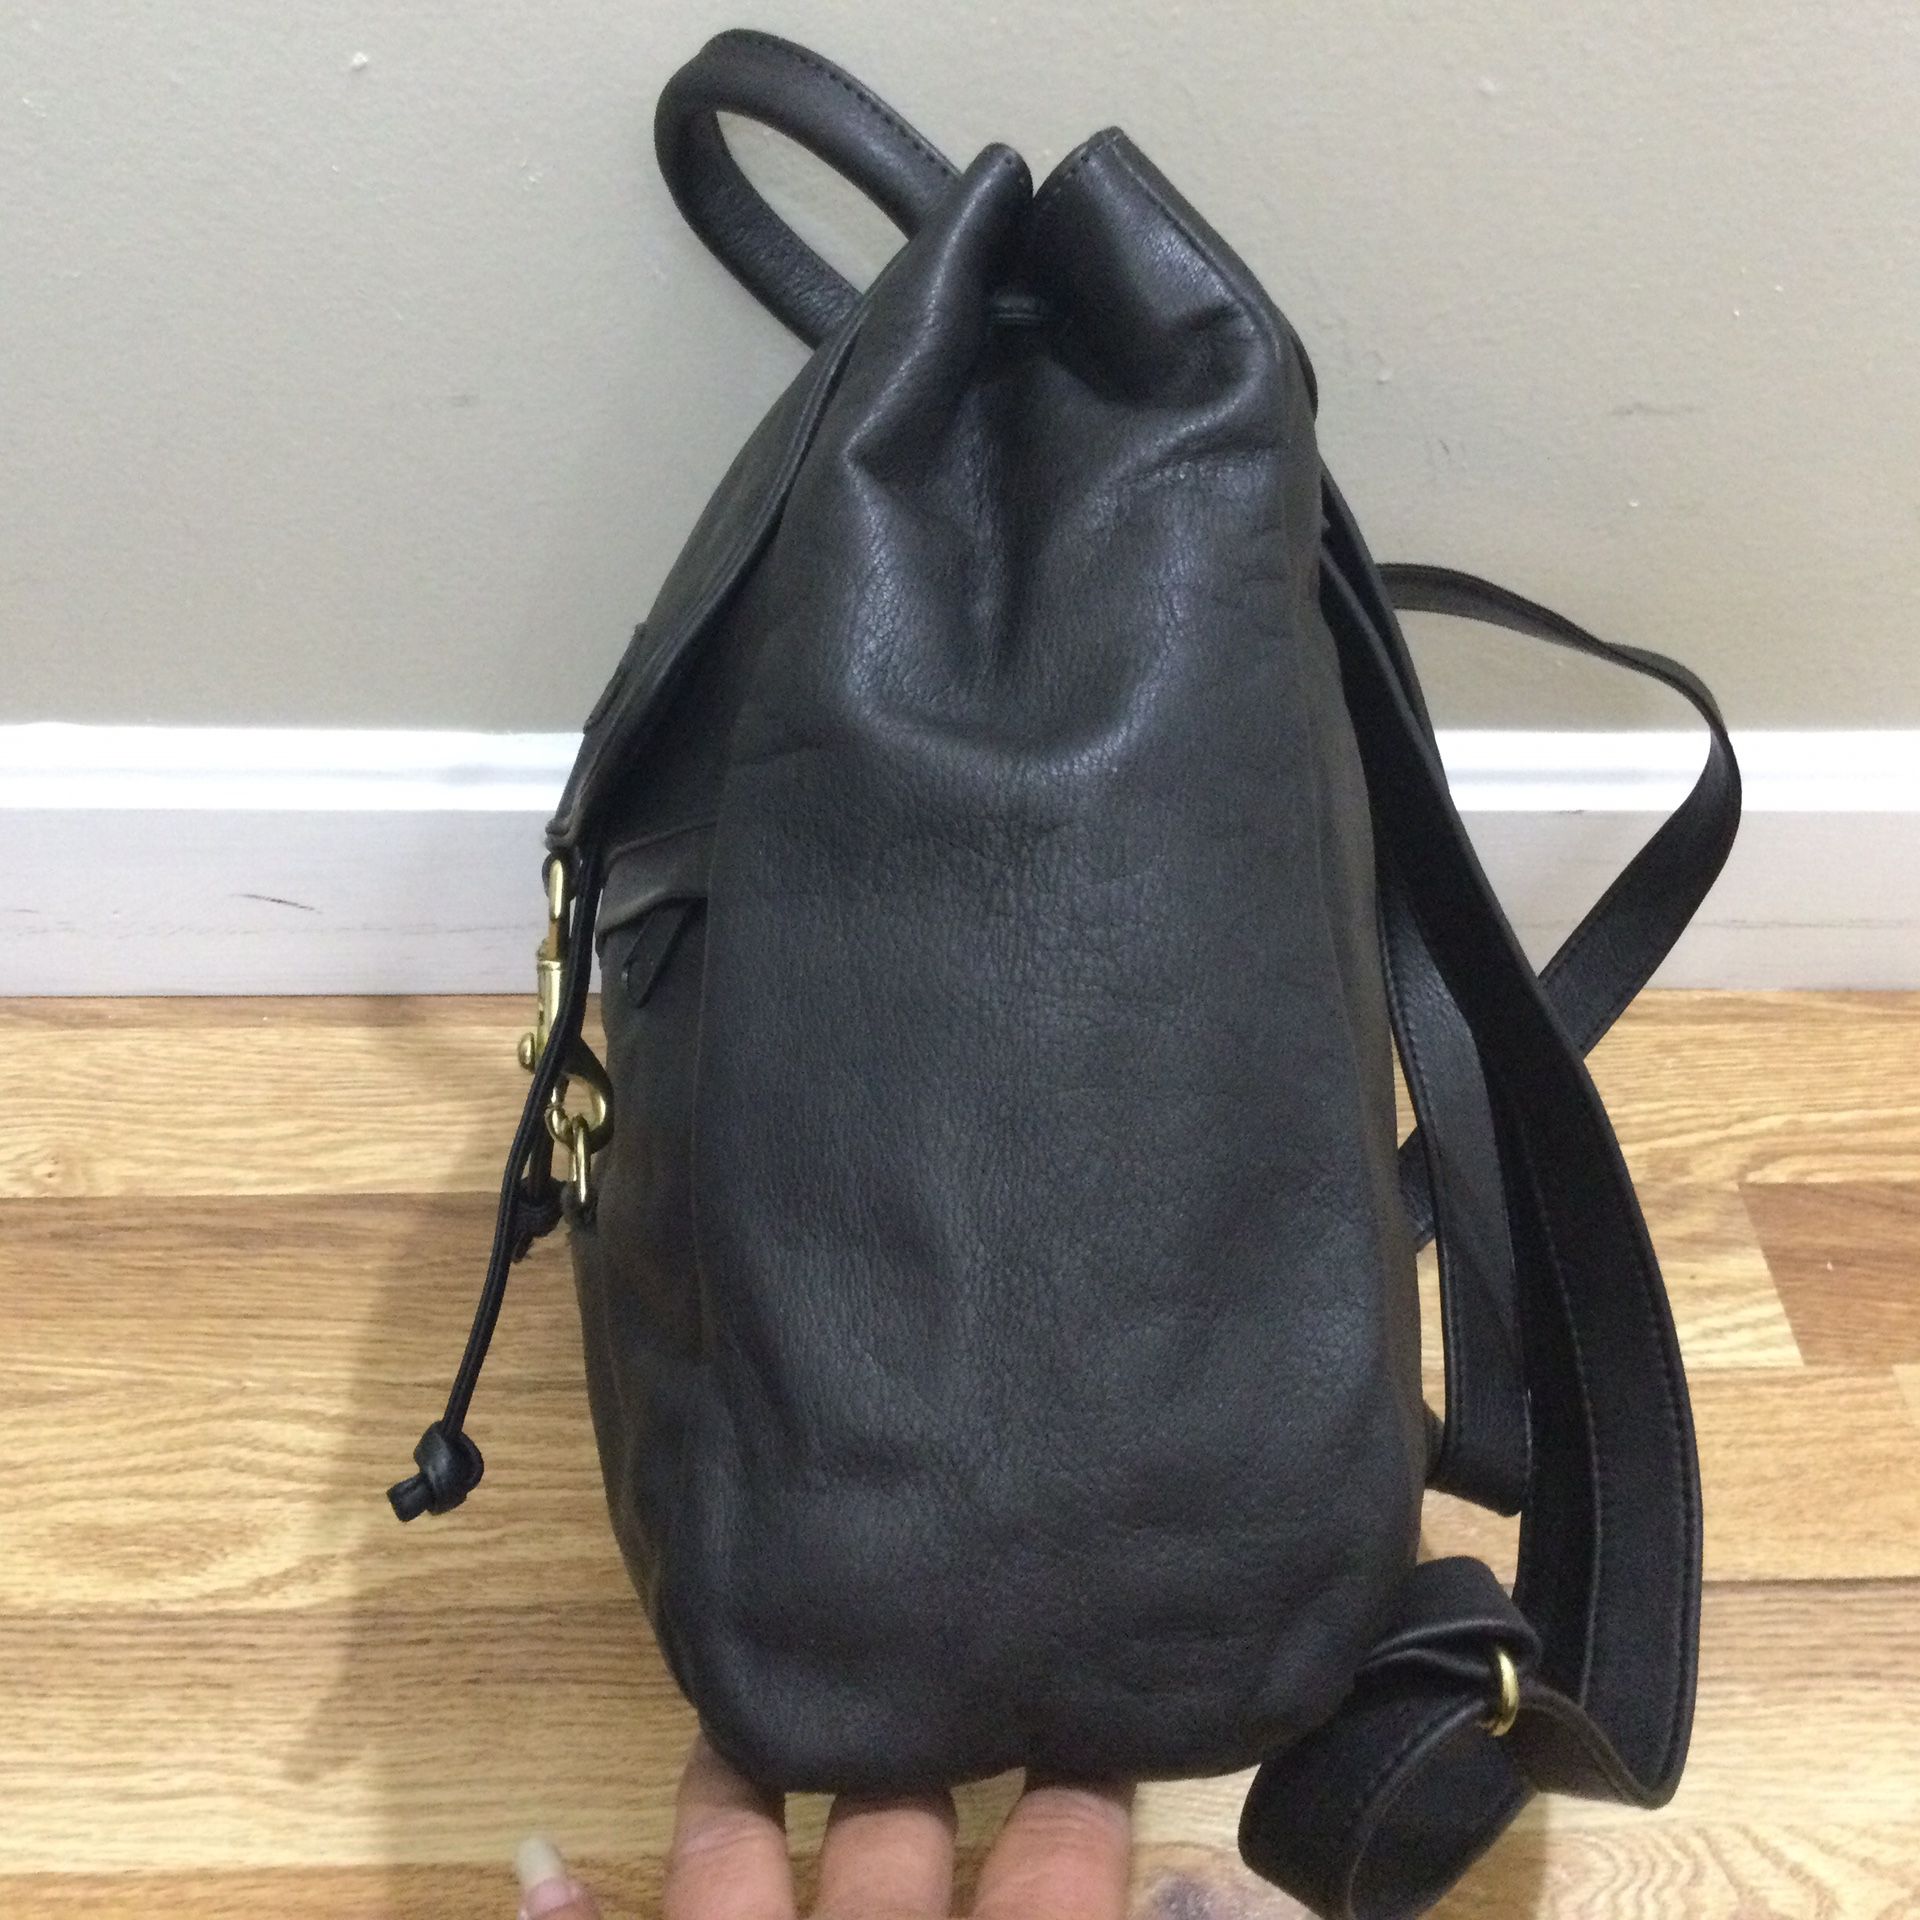 L.L. Bean Black Leather Backpack - Vintage NOS